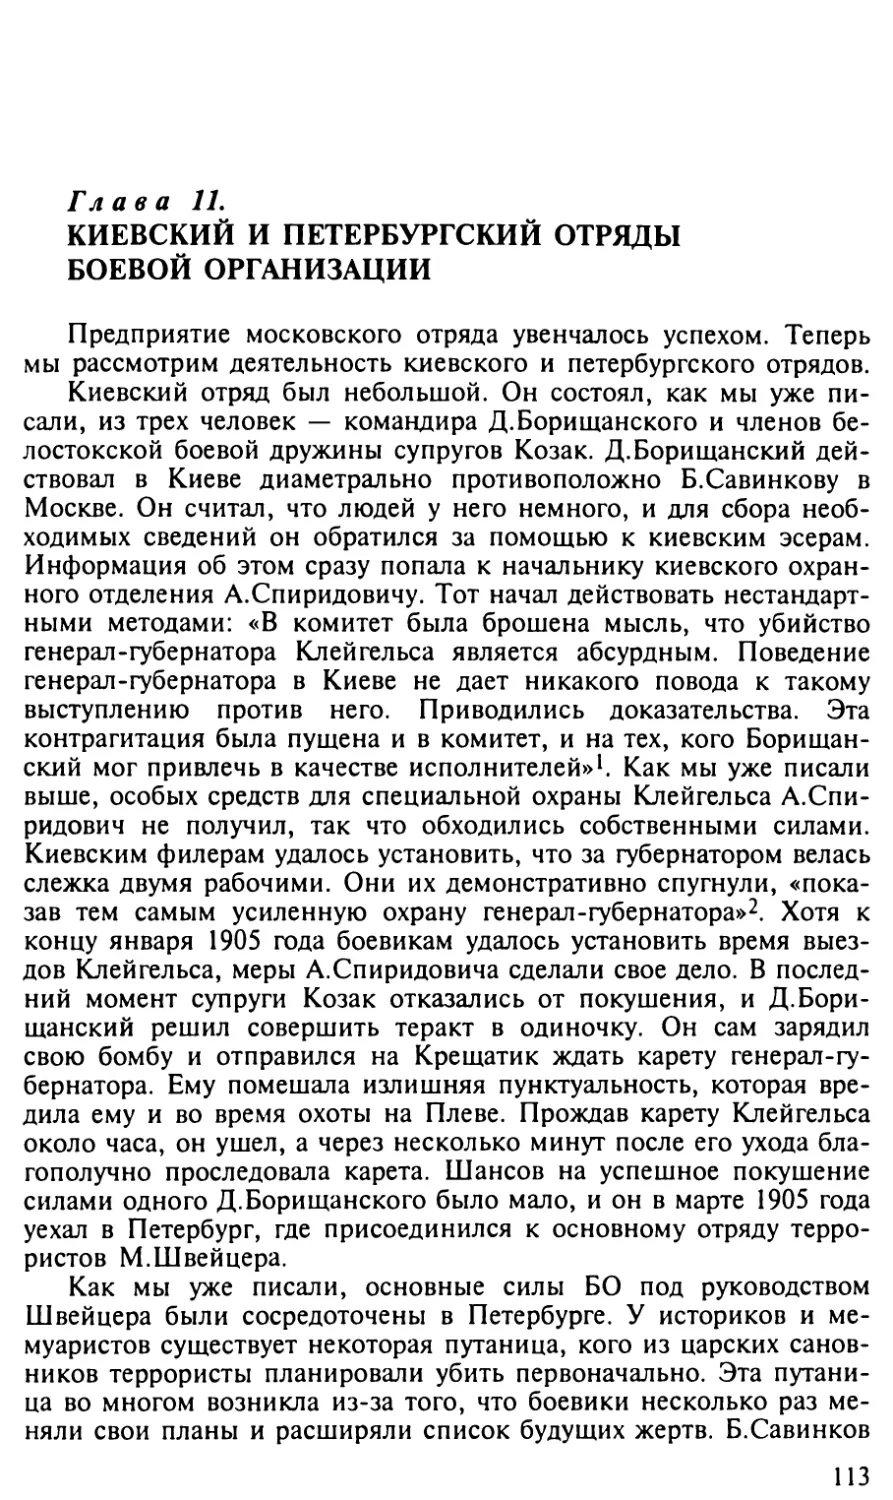 Глава 11. Киевский и петербургский отряды боевой организации